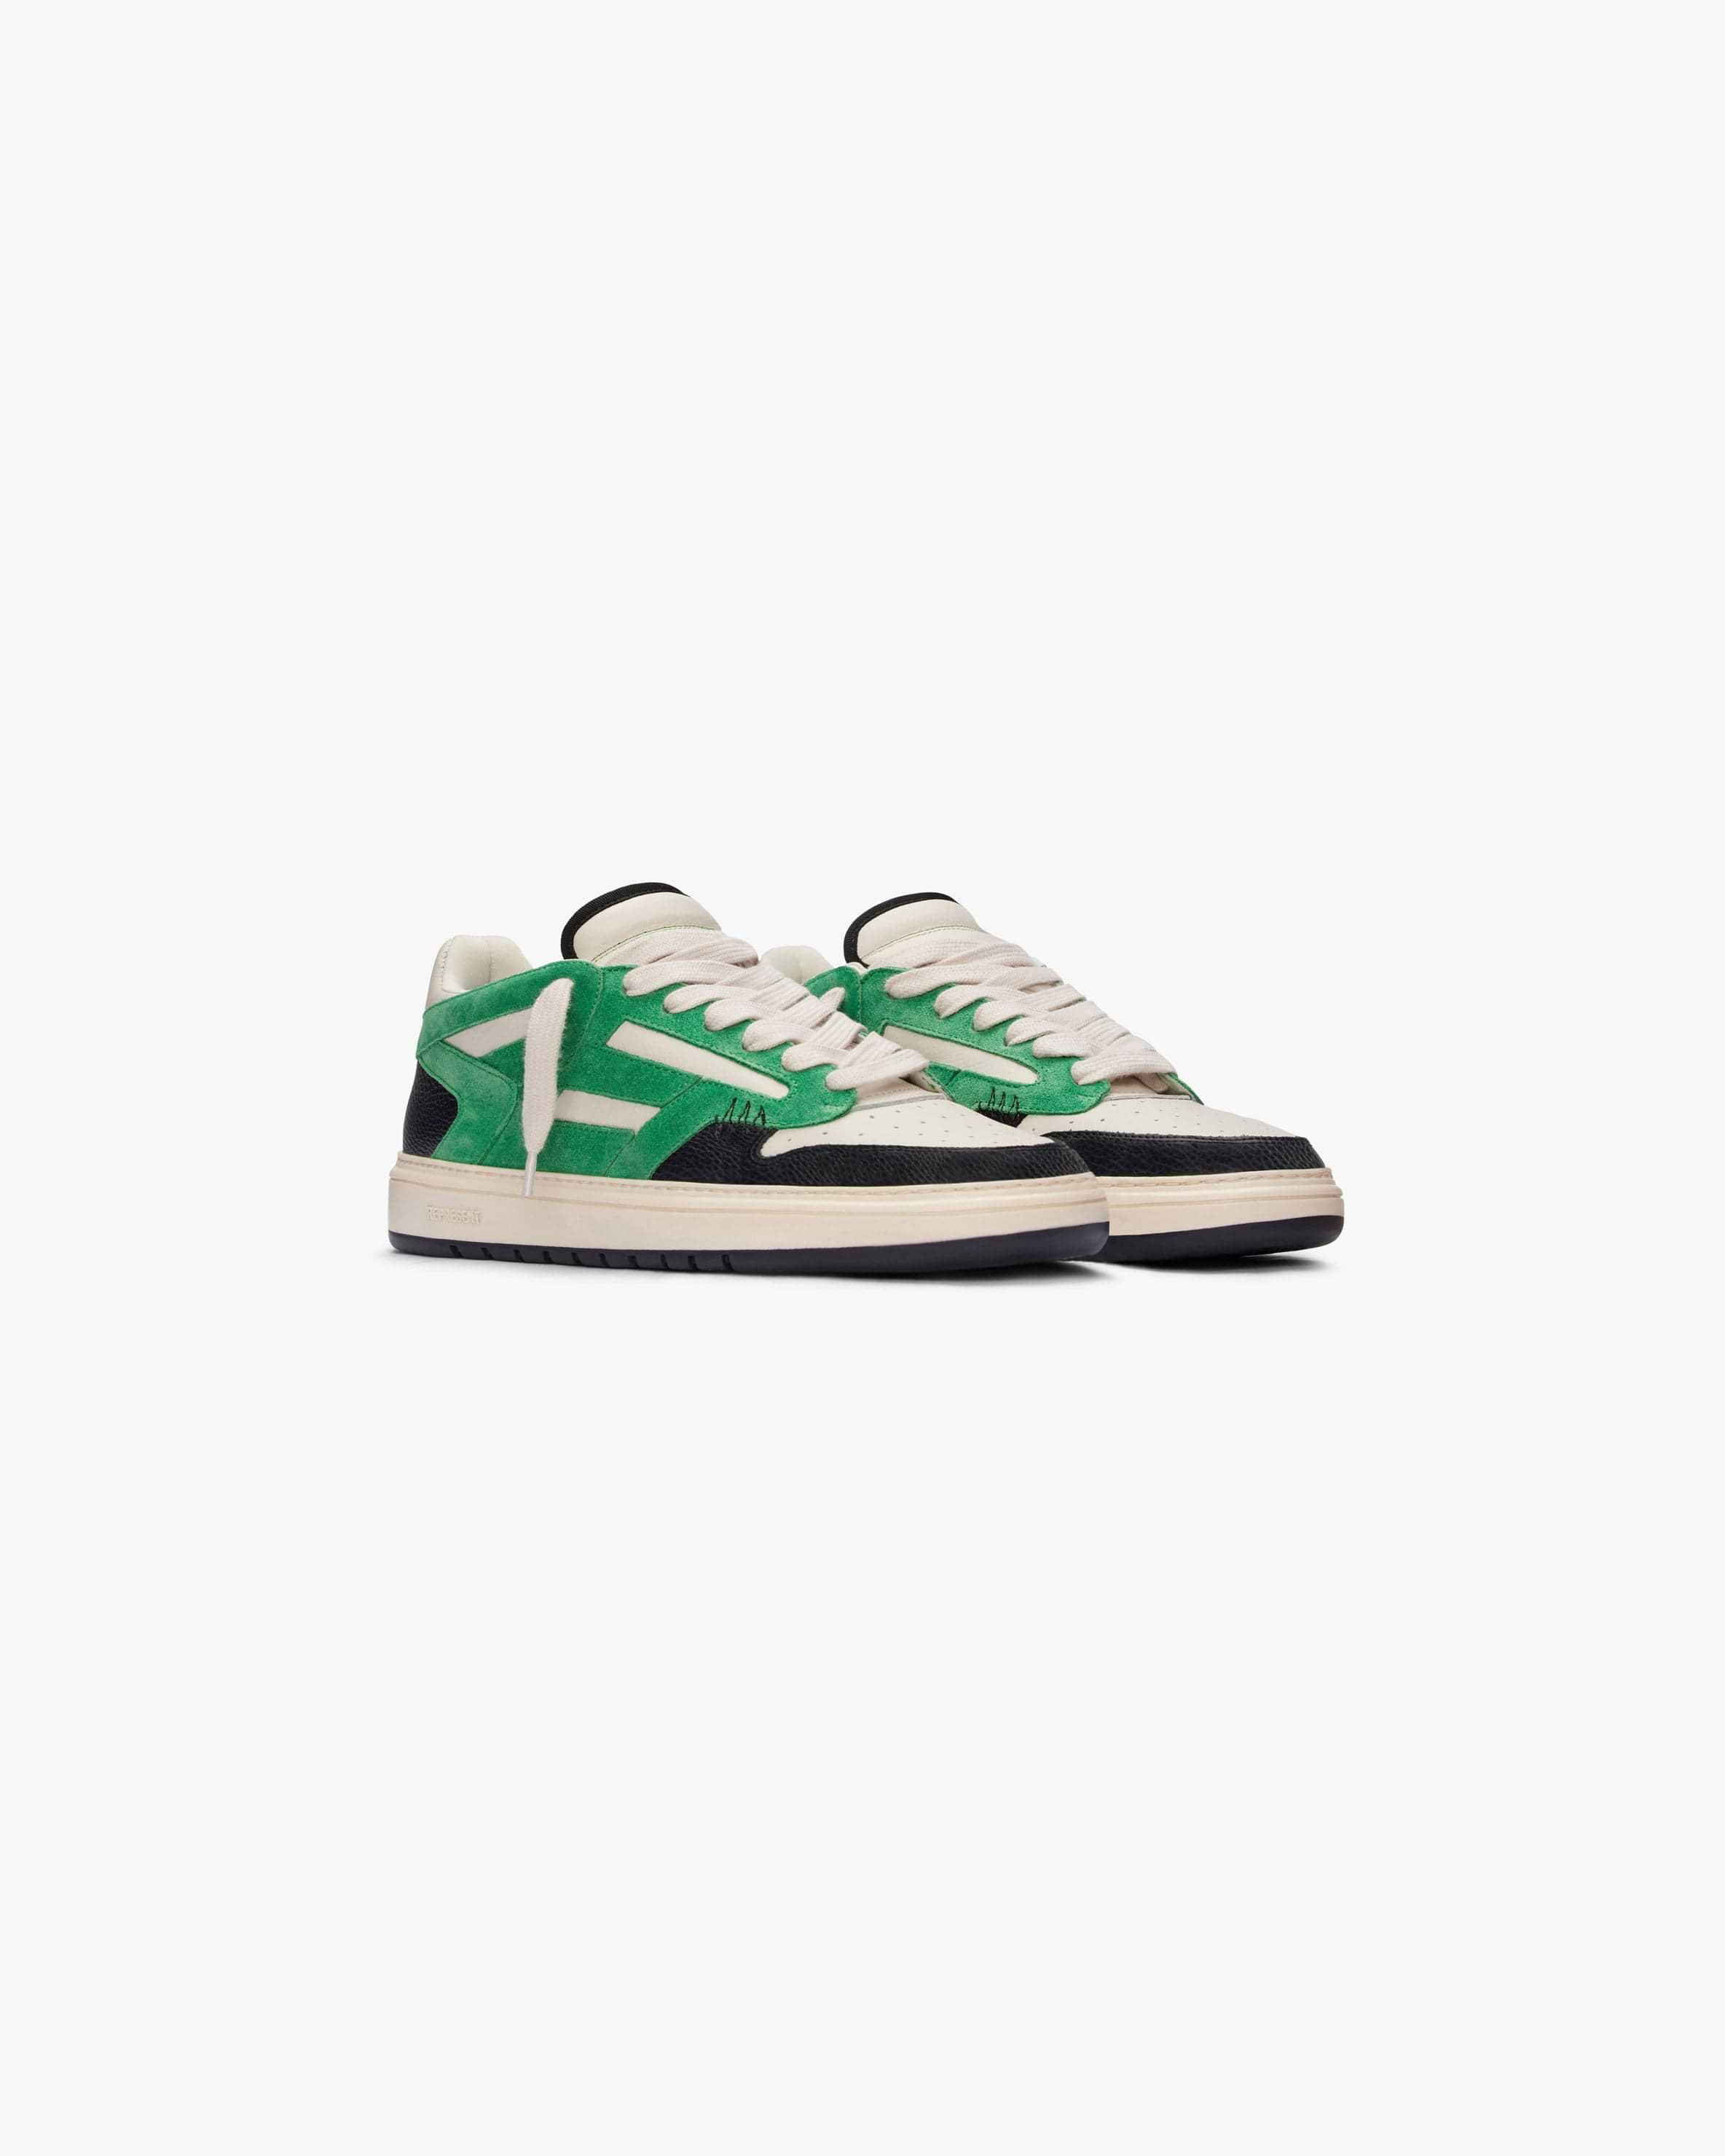 Green Reptor Low Sneakers | REPRESENT CLO